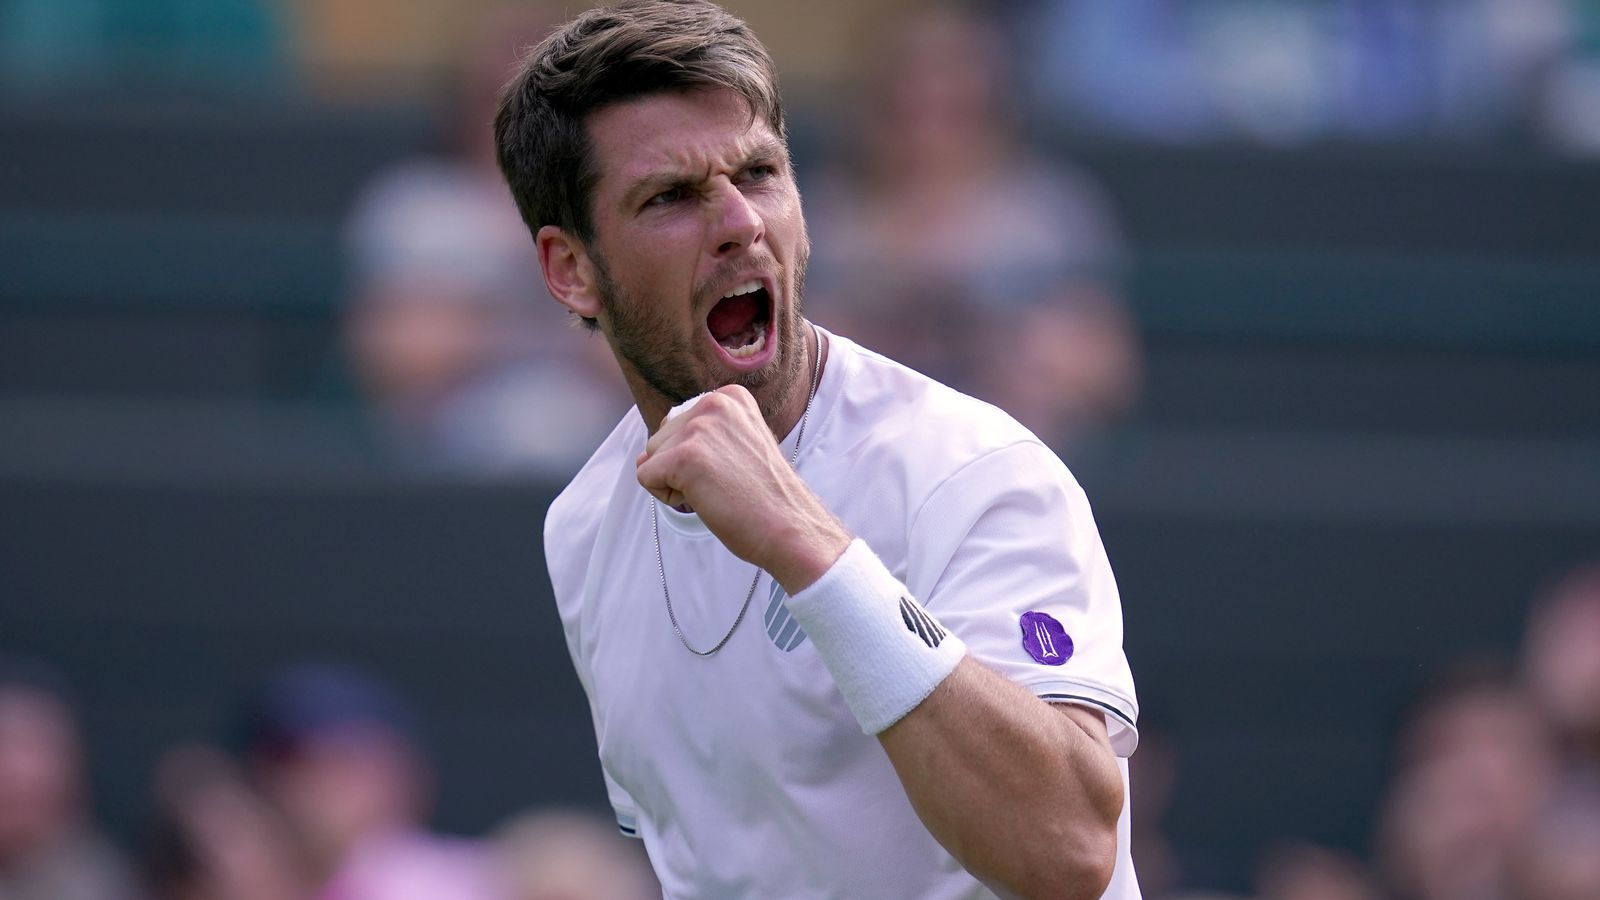 Wimbledon: Cameron Norrie bagatelizuje obavy ze zranění a chce využít podporu publika ve svůj prospěch |  Novinky z tenisu